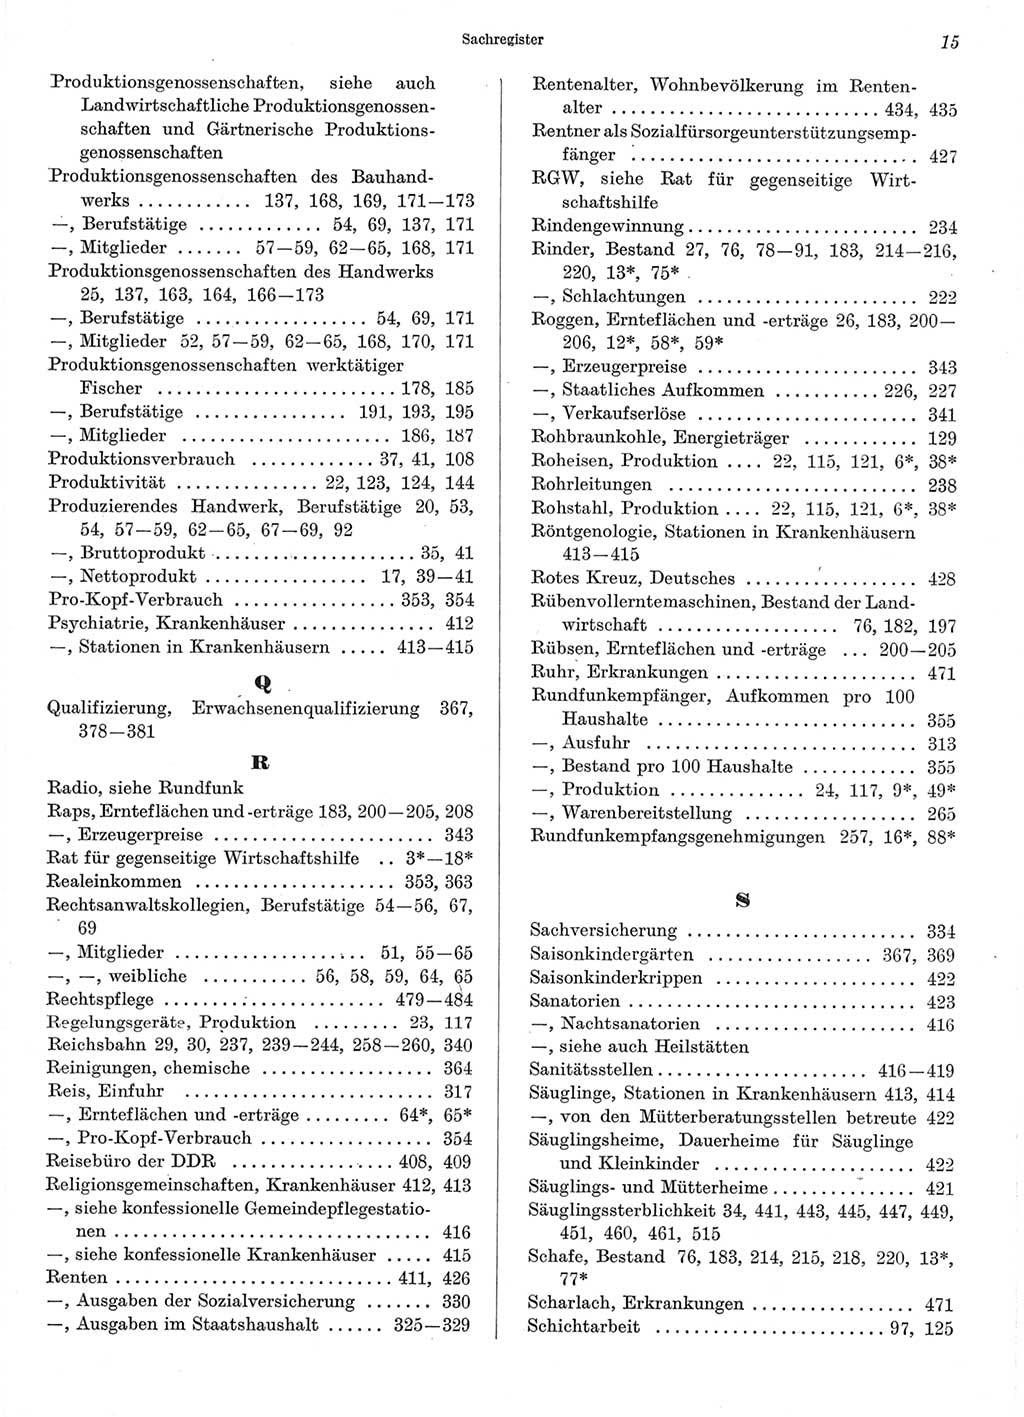 Statistisches Jahrbuch der Deutschen Demokratischen Republik (DDR) 1970, Seite 15 (Stat. Jb. DDR 1970, S. 15)